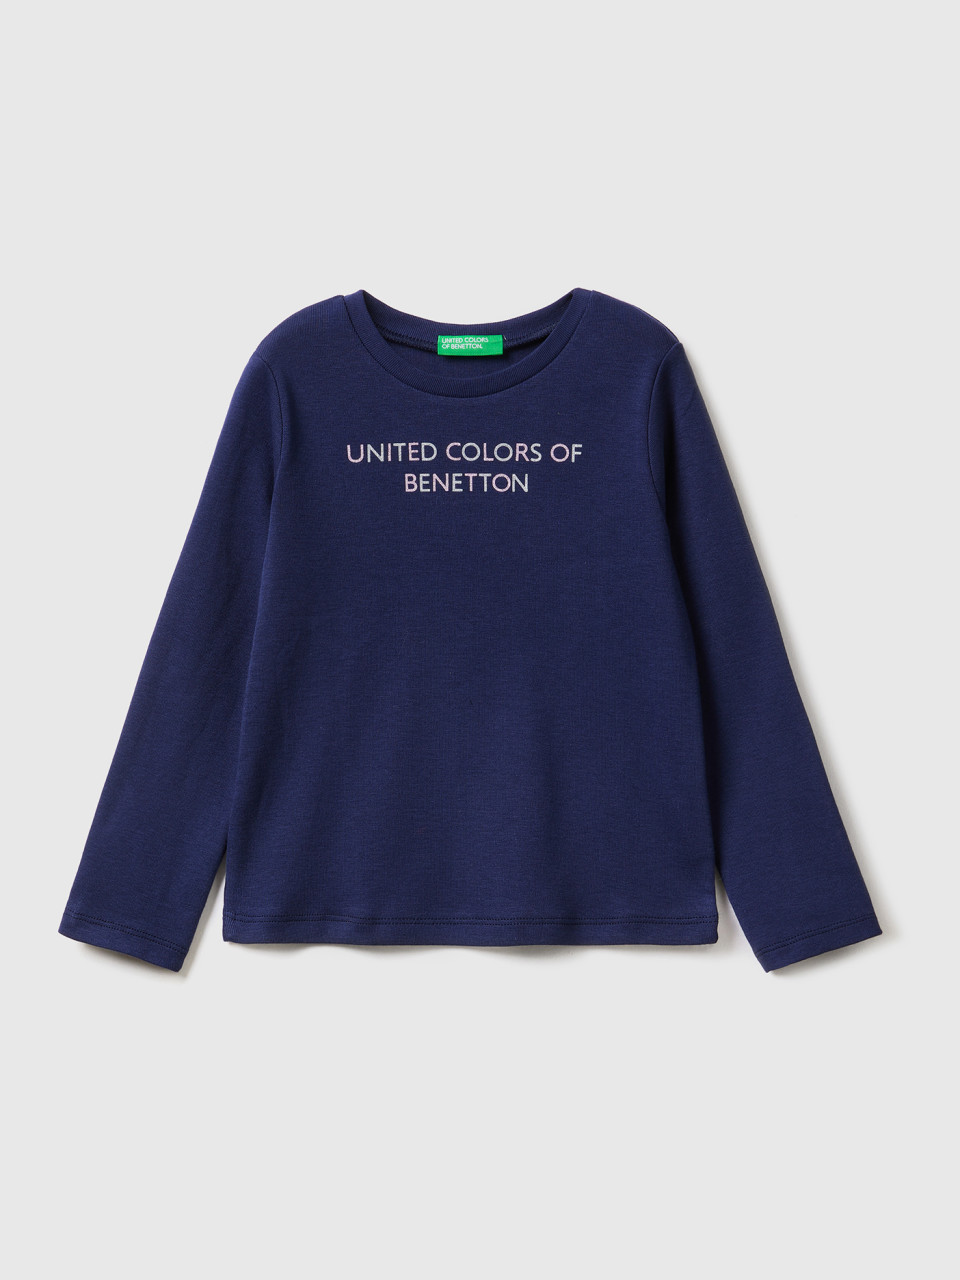 Benetton, Long Sleeve T-shirt With Glitter Print, Dark Blue, Kids